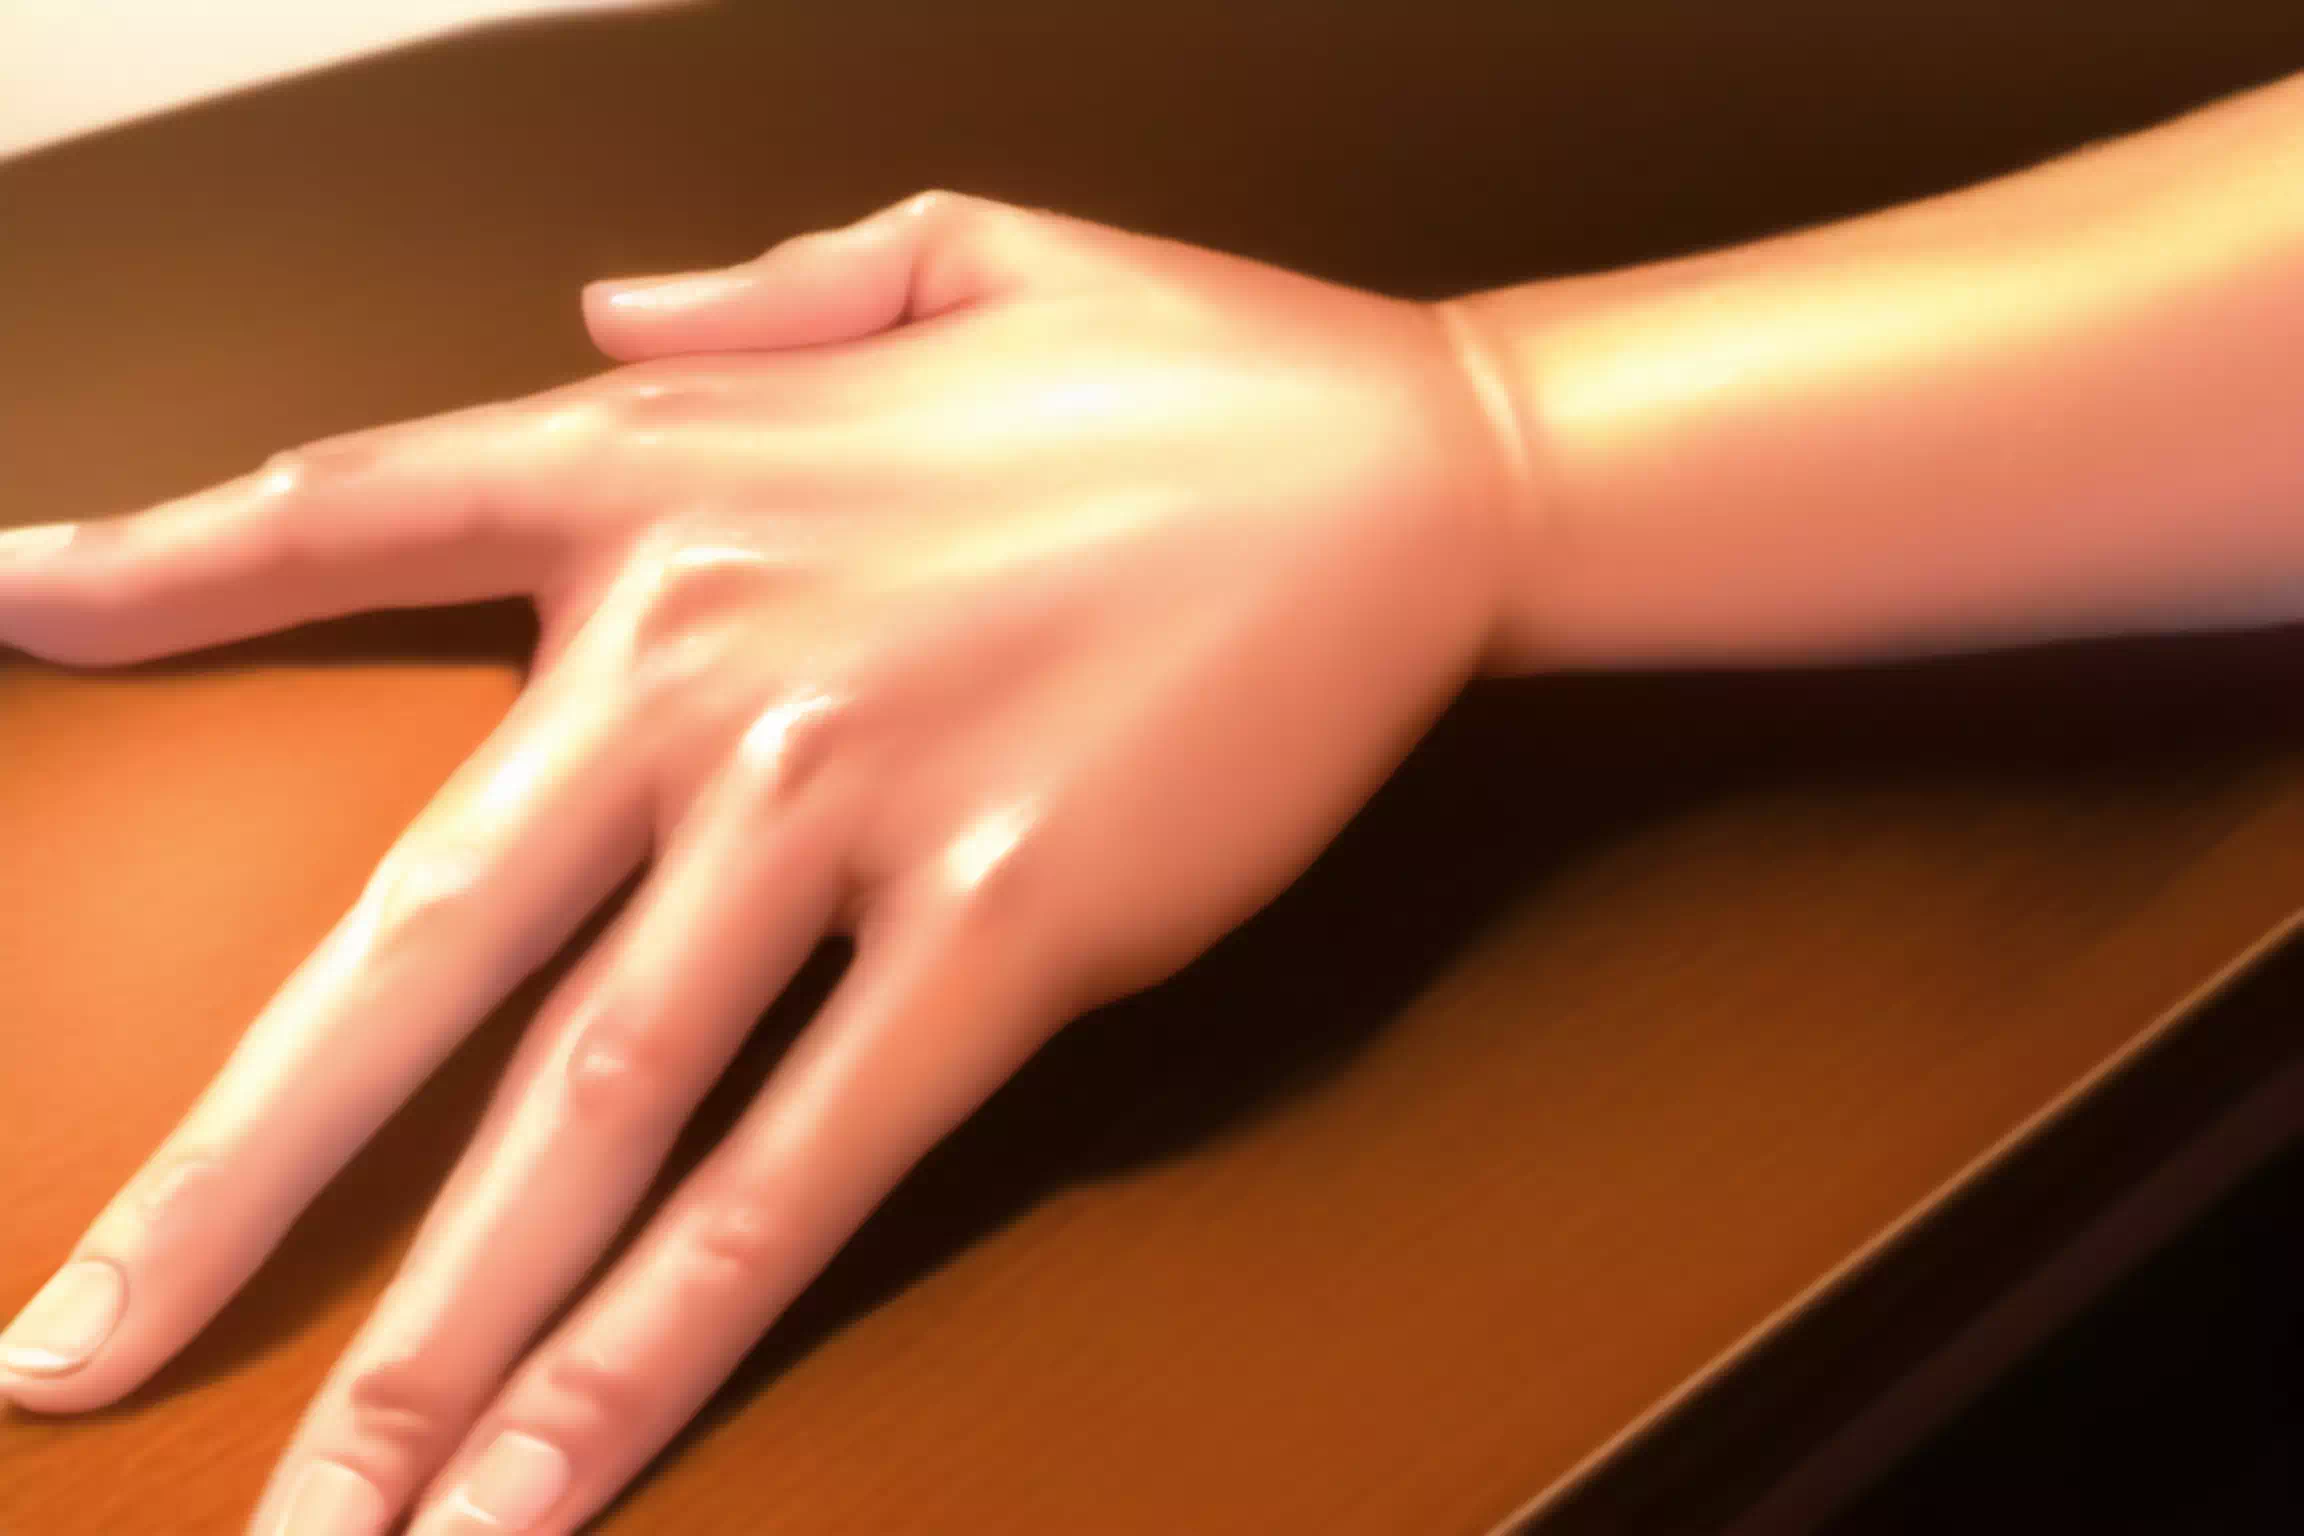 【AI】Hand